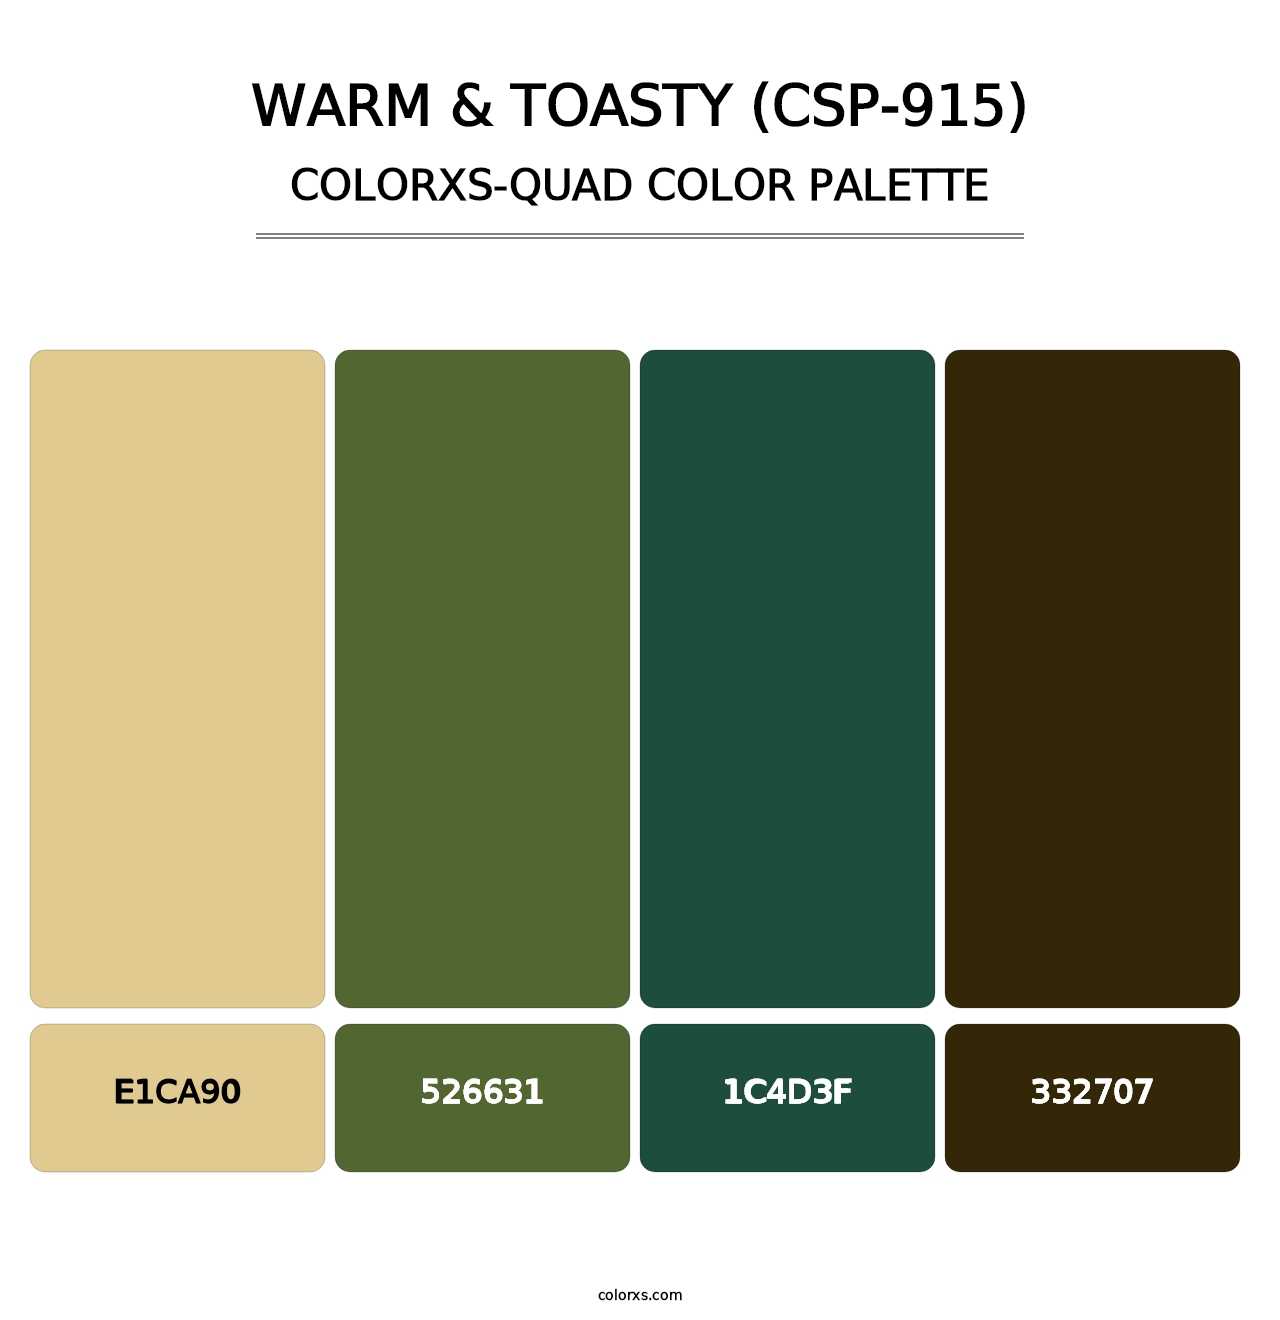 Warm & Toasty (CSP-915) - Colorxs Quad Palette